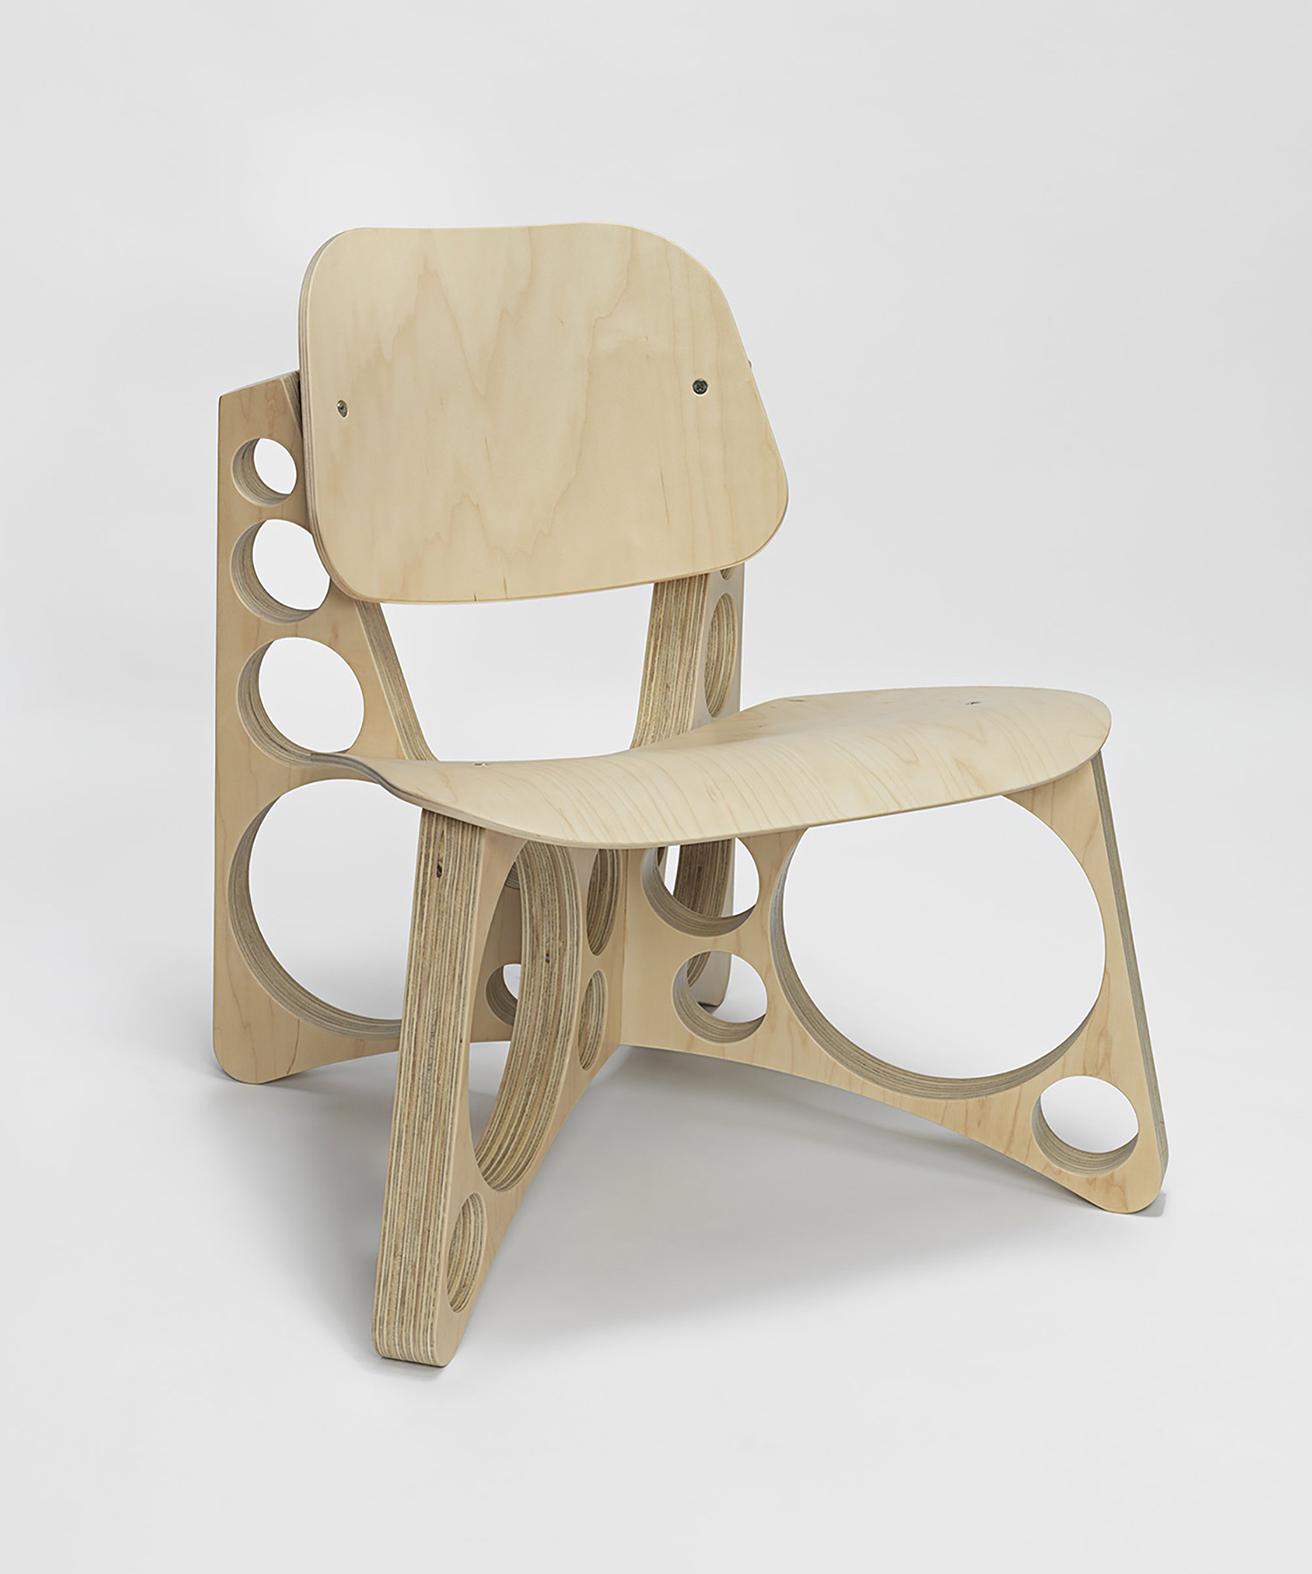 前回の展覧会にて販売されました《Shop Chair》にラウンジチェアが登場。《Shop Lounge Chair》w65×d58.4×h66cm ©️Tom Sachs